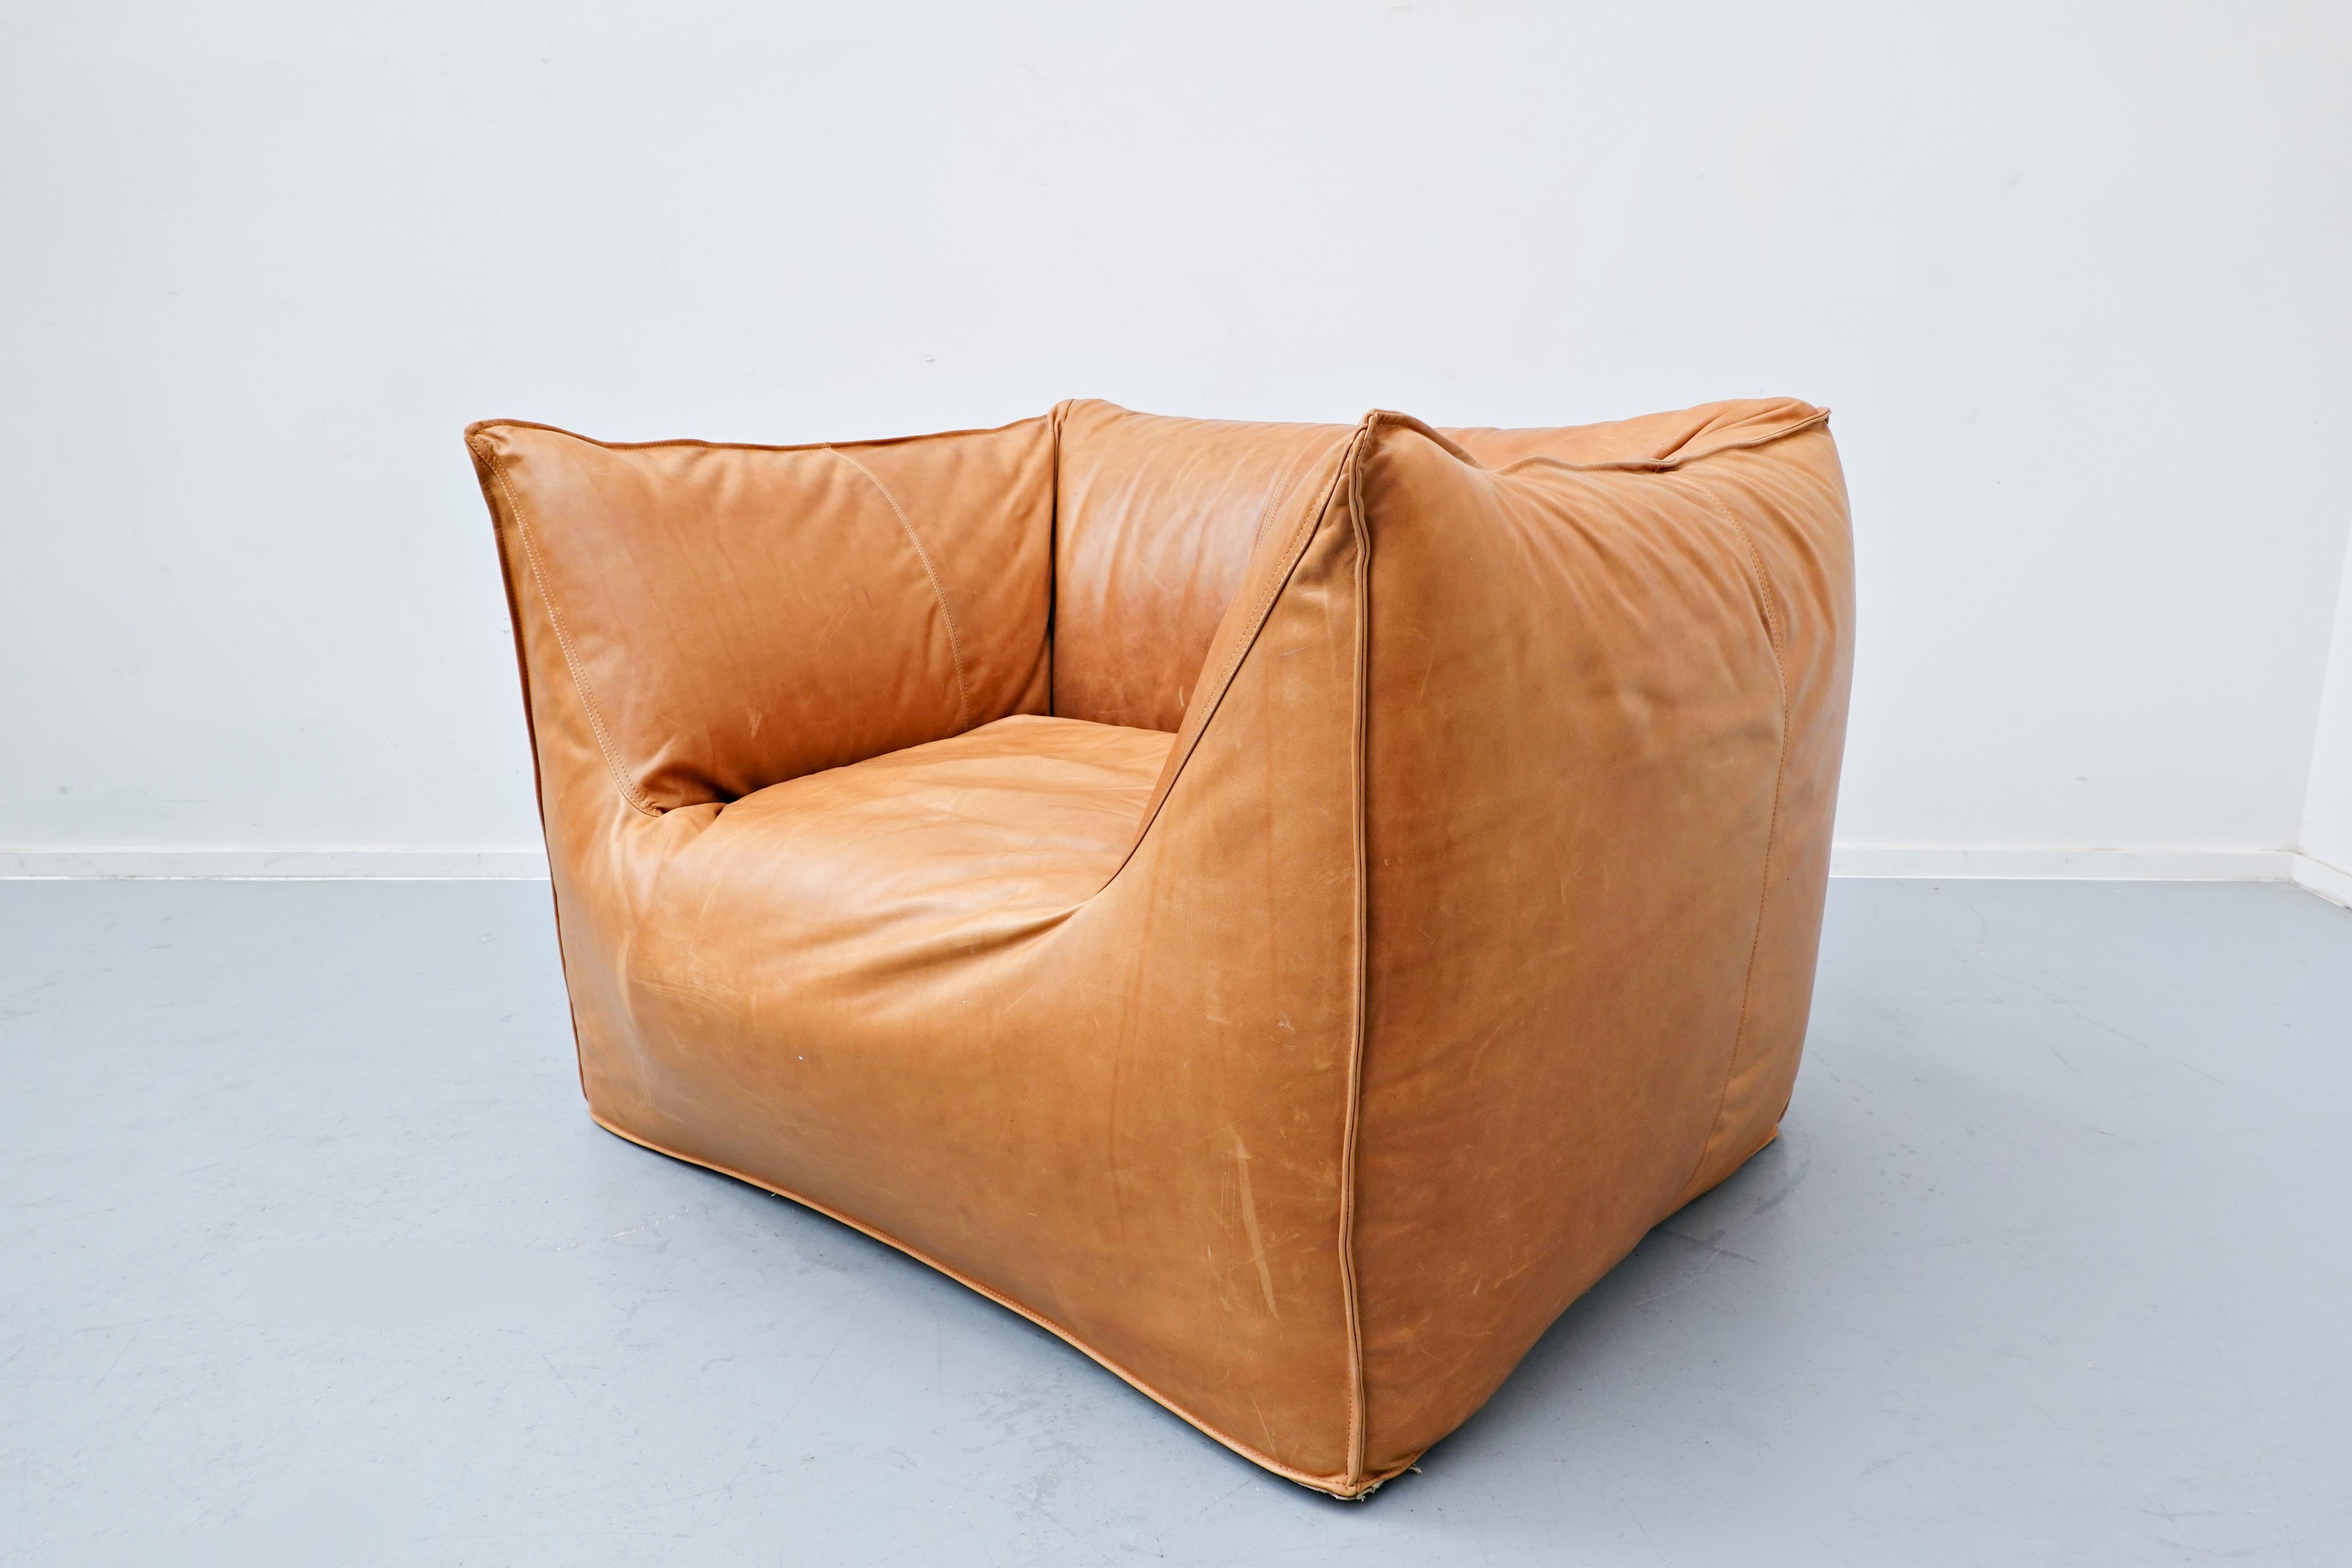 Italian “Le Bambole” Armchair by Mario Bellini for B&B Italia, 1970s, Mid-Century Modern